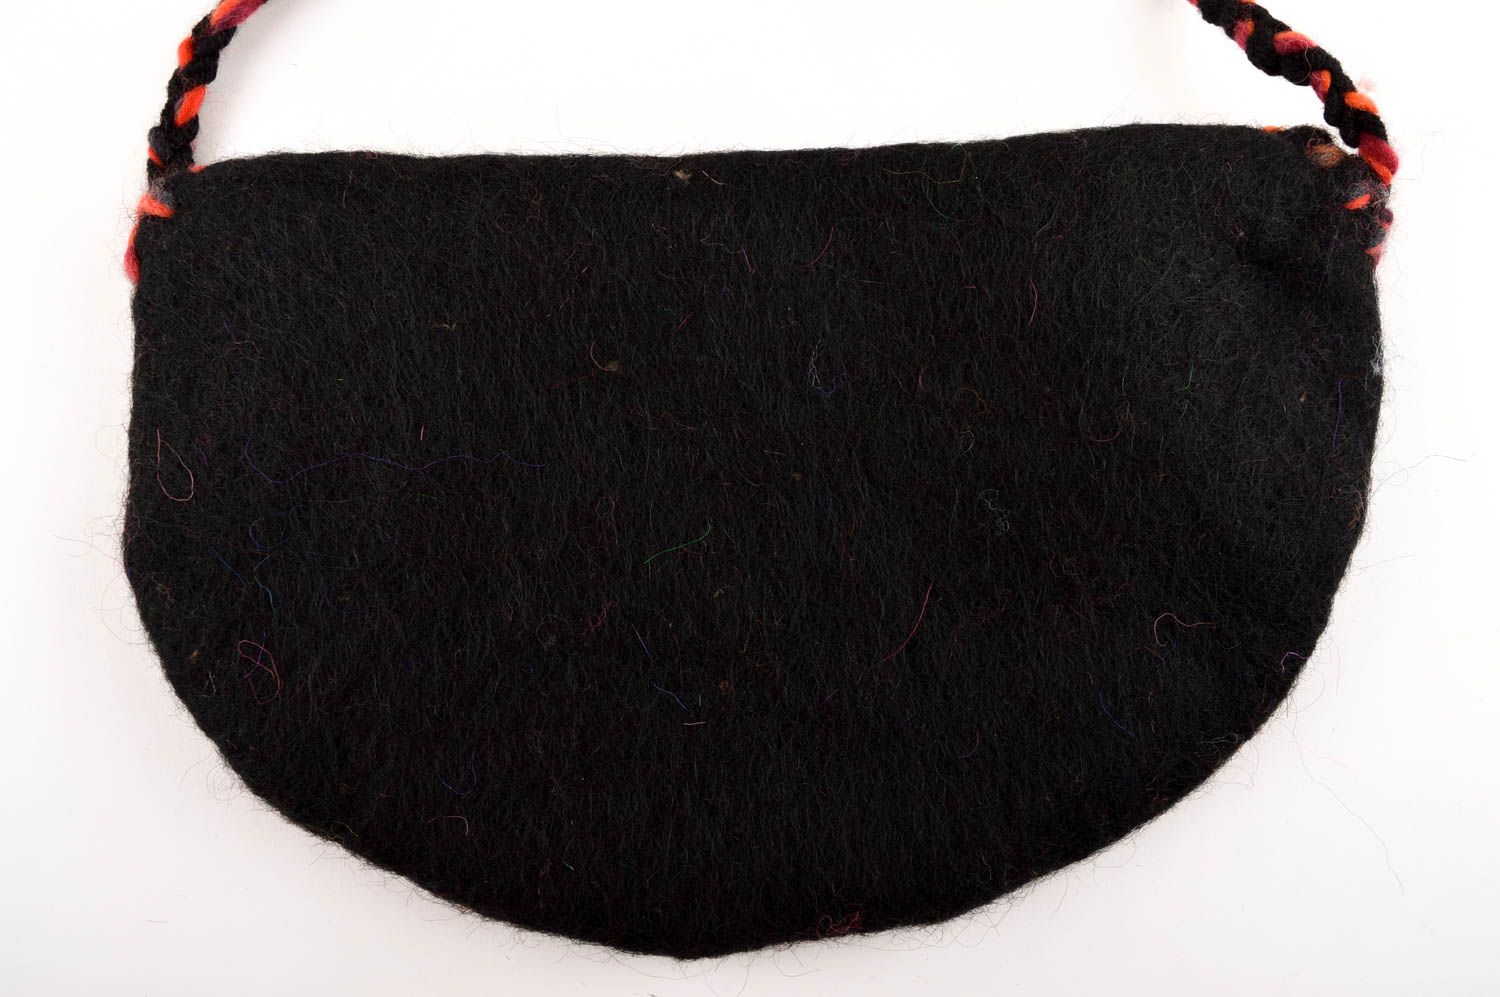 Сумка ручной работы женская сумка черная с красным сумка валяние из шерсти фото 6